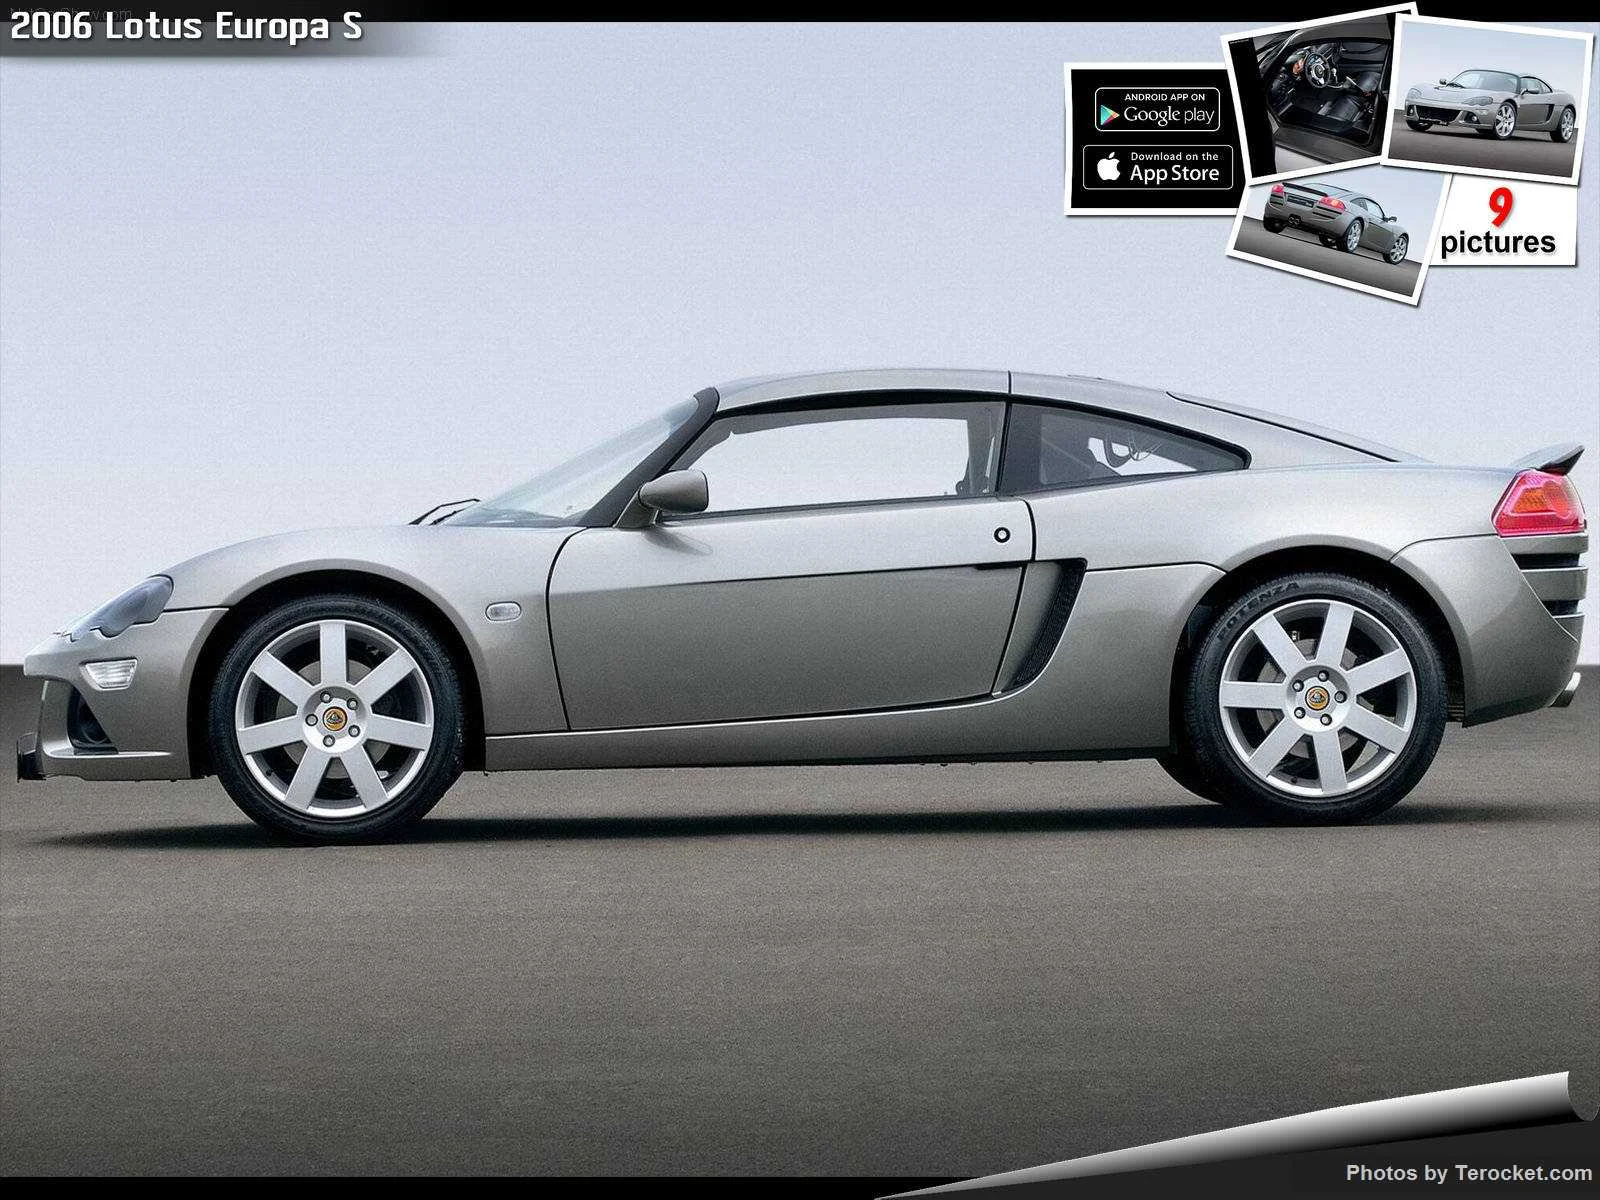 Hình ảnh siêu xe Lotus Europa S 2006 & nội ngoại thất